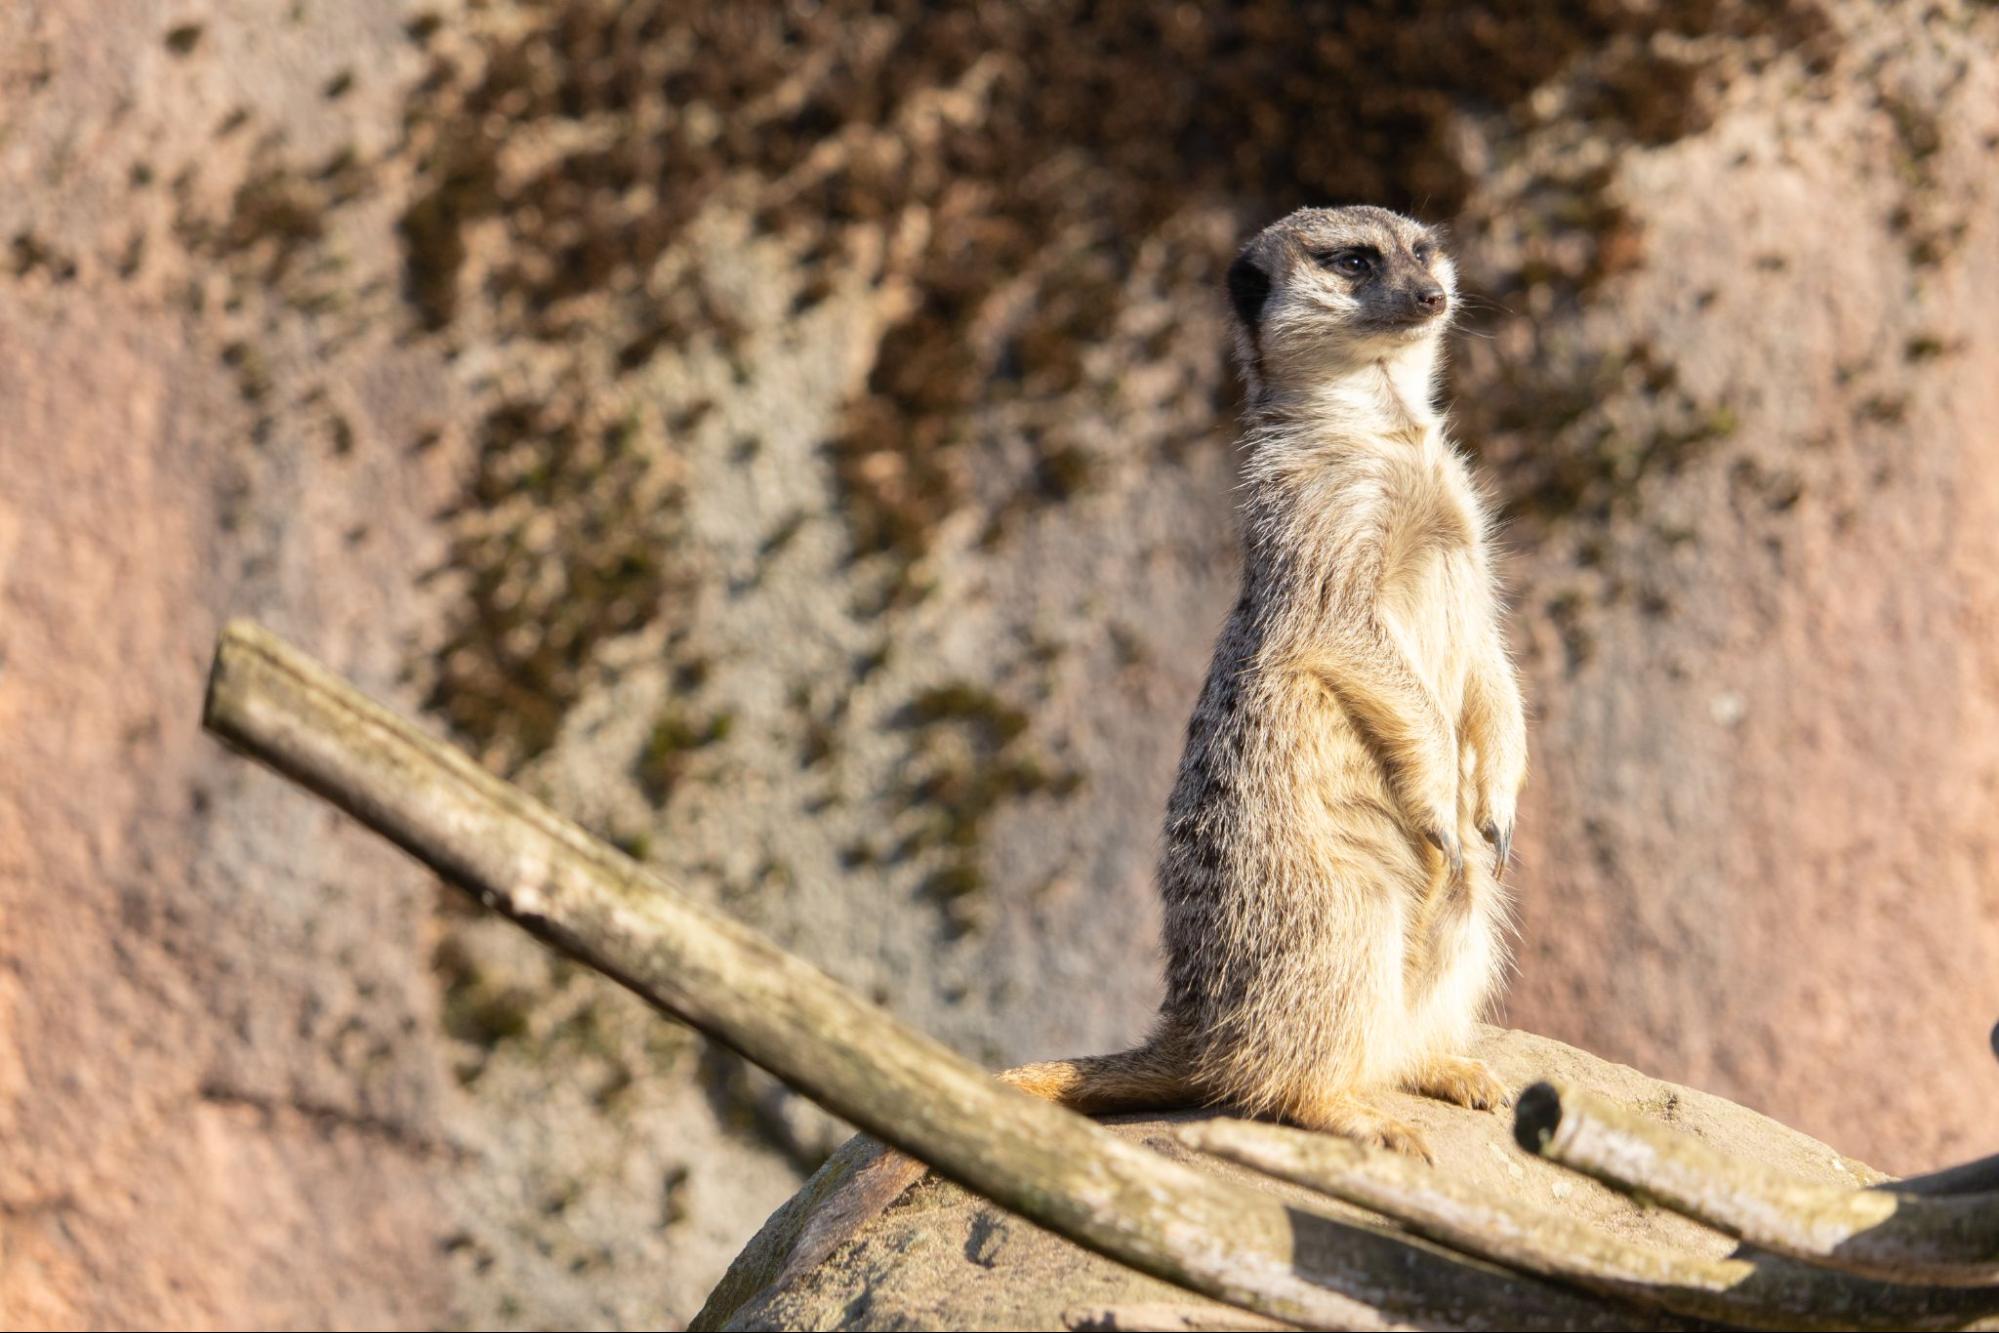 Get Up Close to Rare Animals at Bonanza Exotic Park